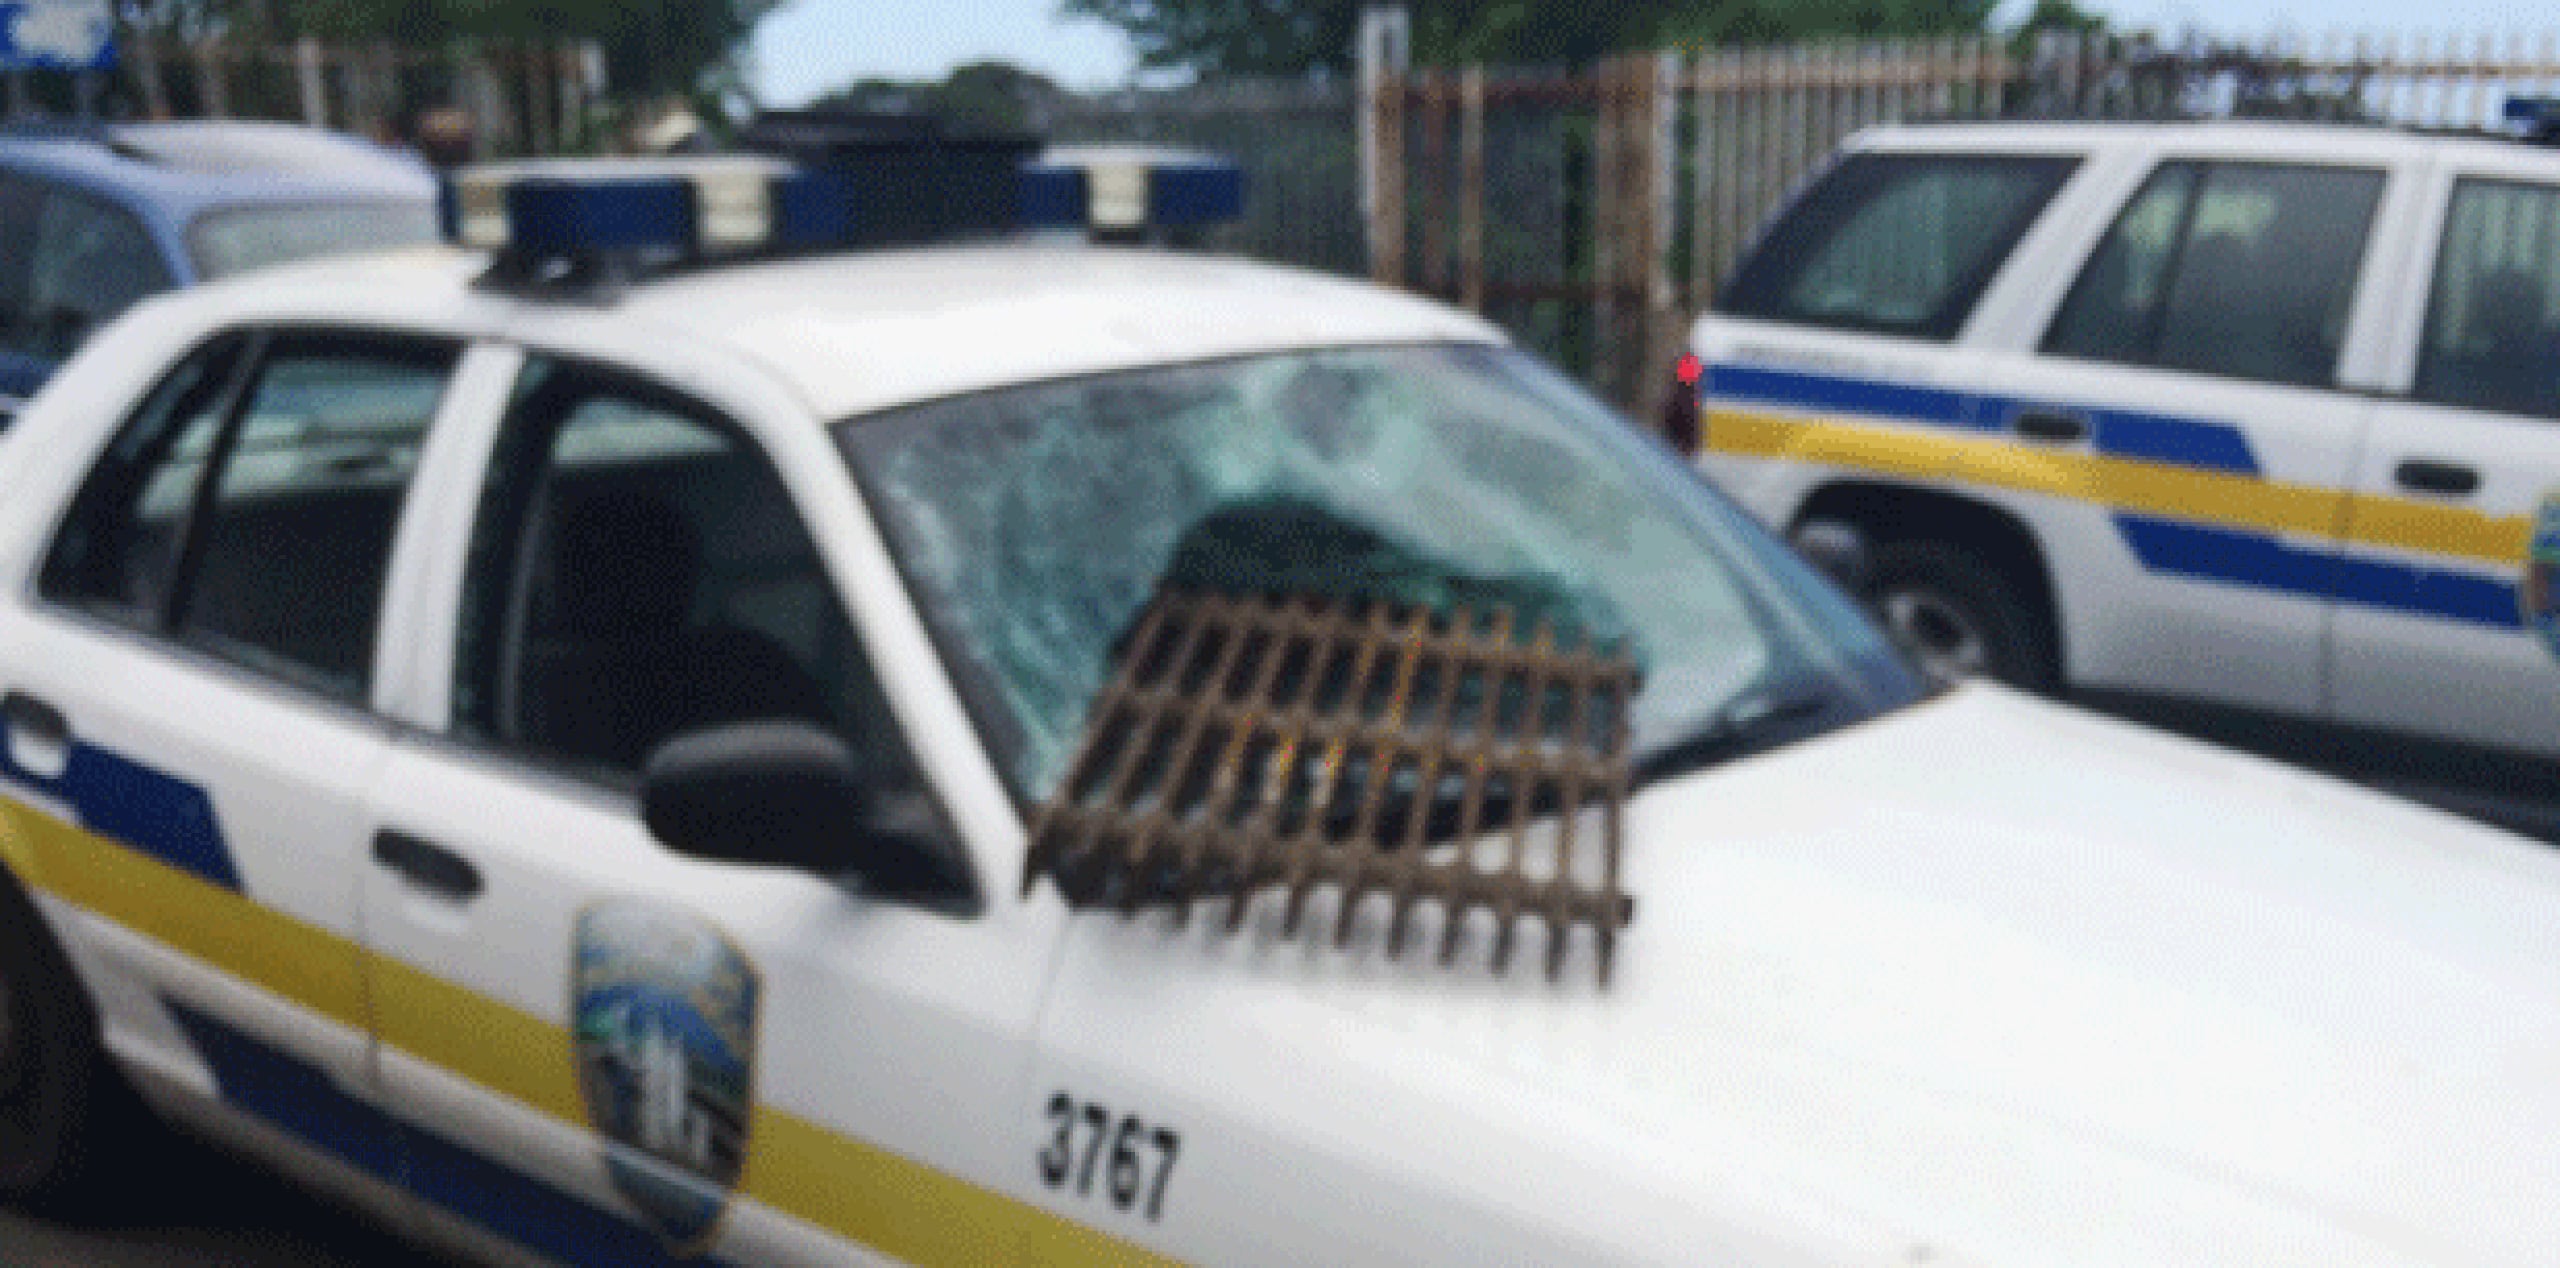 En medio de la reyerta, varias patrullas de la Policía resultaron con daños cuando los ciudadanos les lanzaron piedras y otros objetos. (Suministrada)